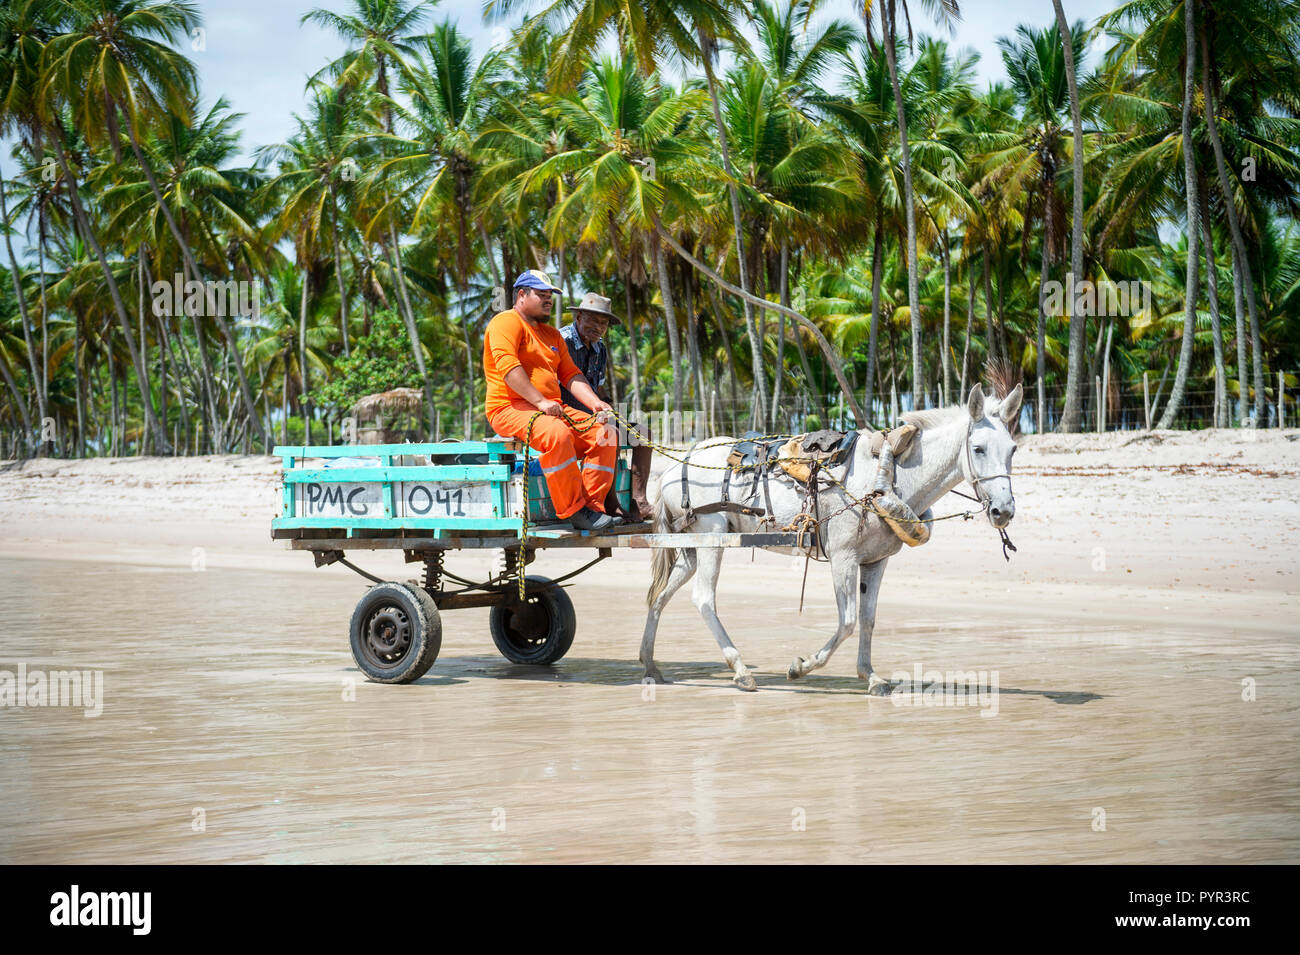 CAIRU, BAHIA, BRASILIEN - ca. Februar 2018: Brasilianische Arbeiter fahren mit dem Warenkorb durch ein Maultier über einen leeren Strand gezogen Stockfoto